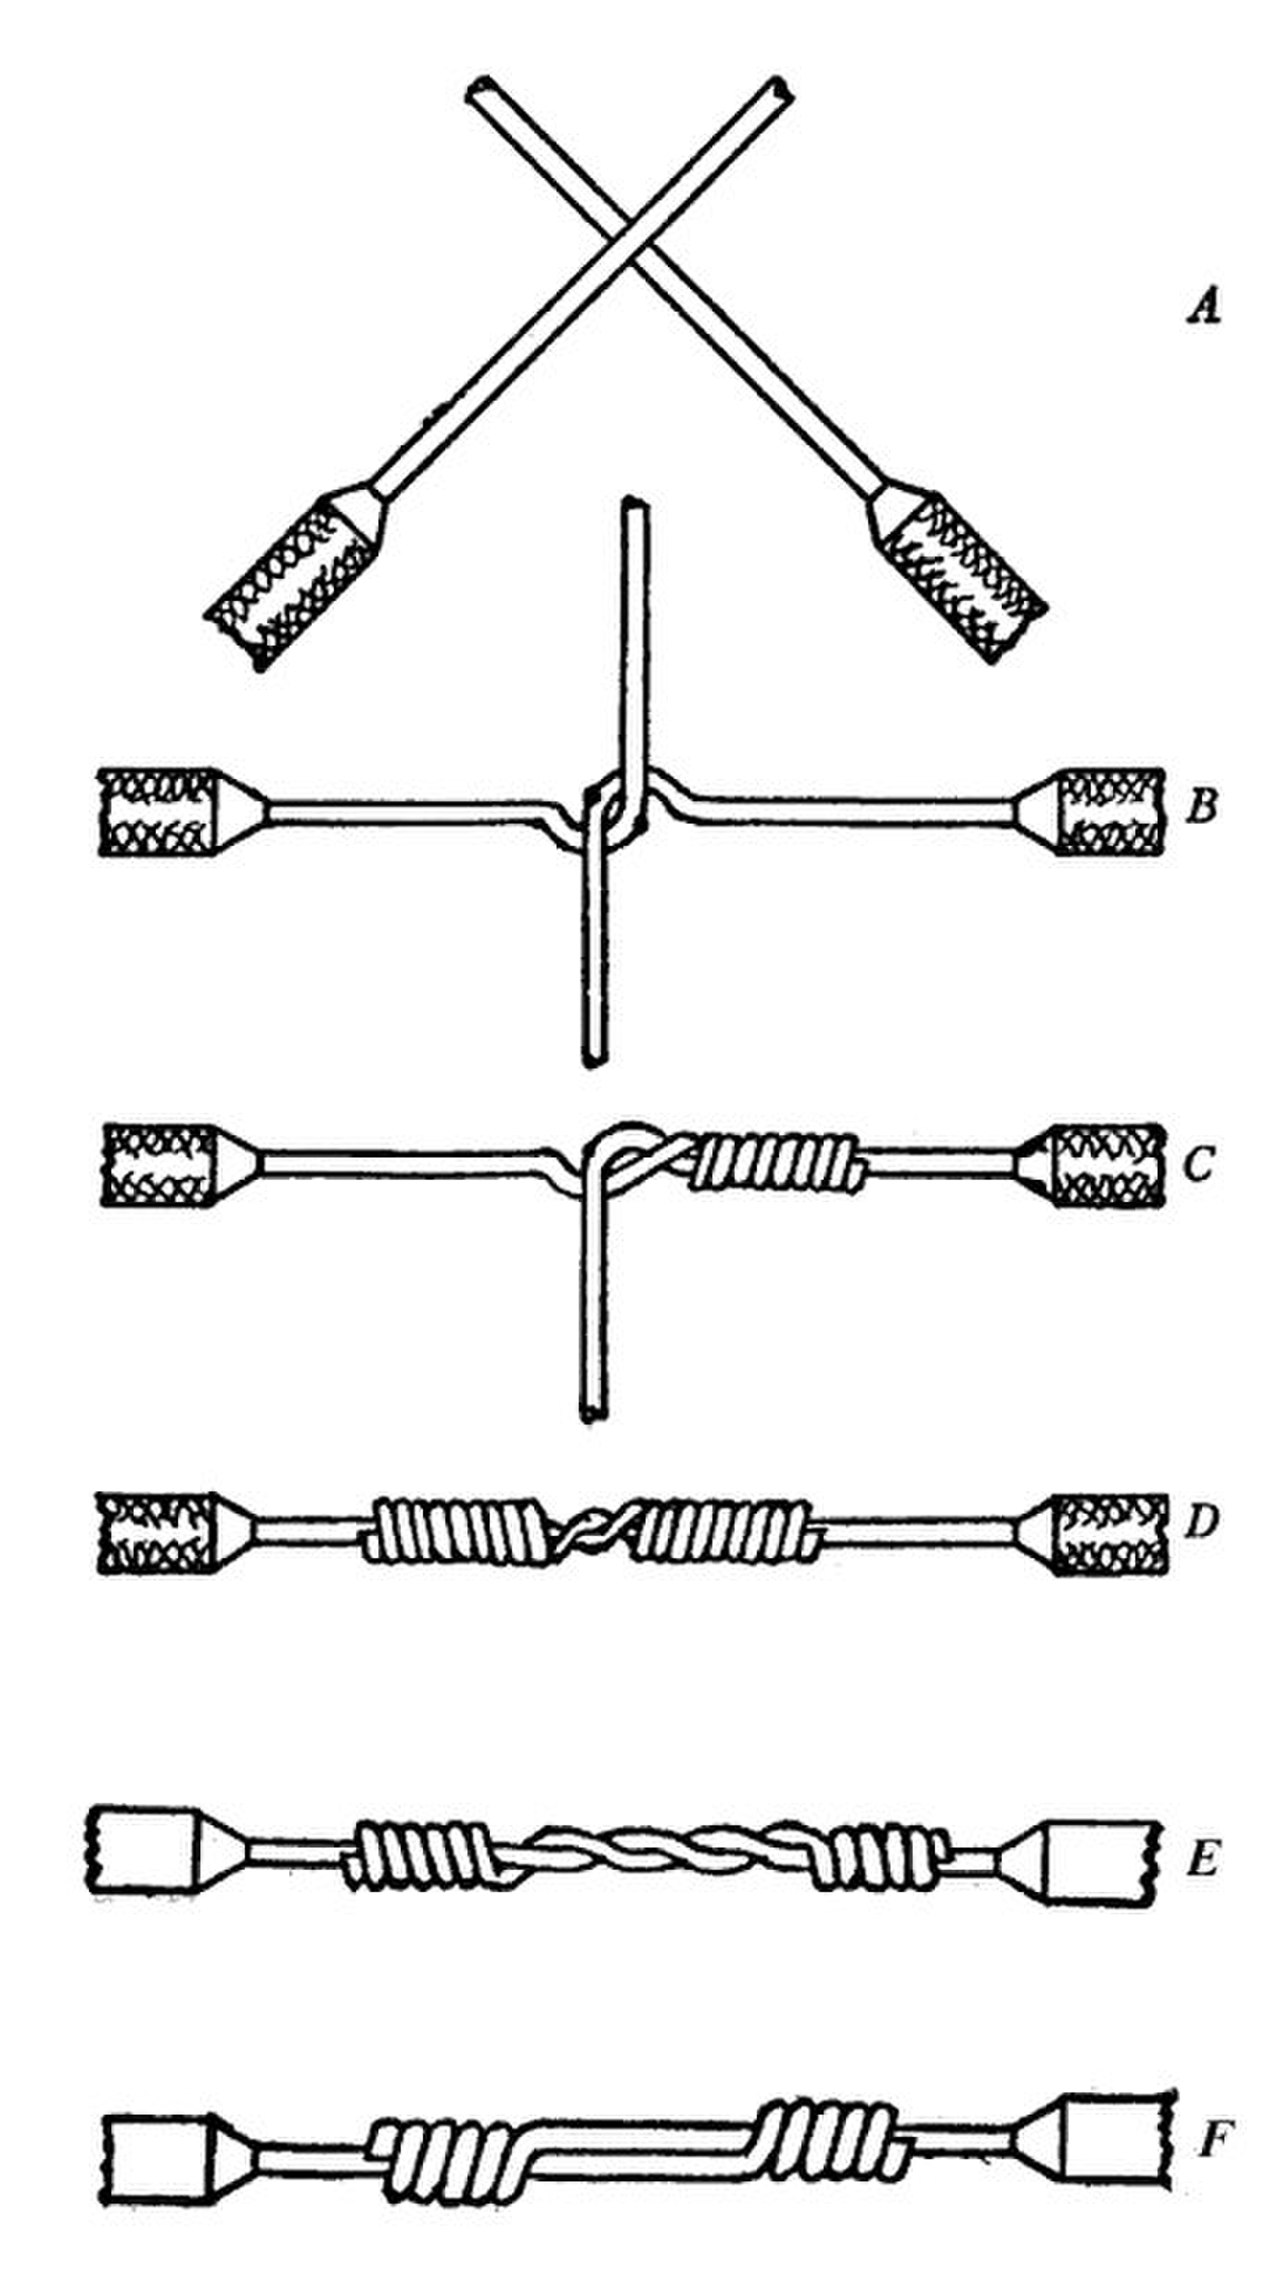 Правильное электрическое соединение. Соединение скруткой медных проводов. Соединение 2 проводов скруткой. Соединение одножильных медных проводов. Правильное соединение проводов скруткой.